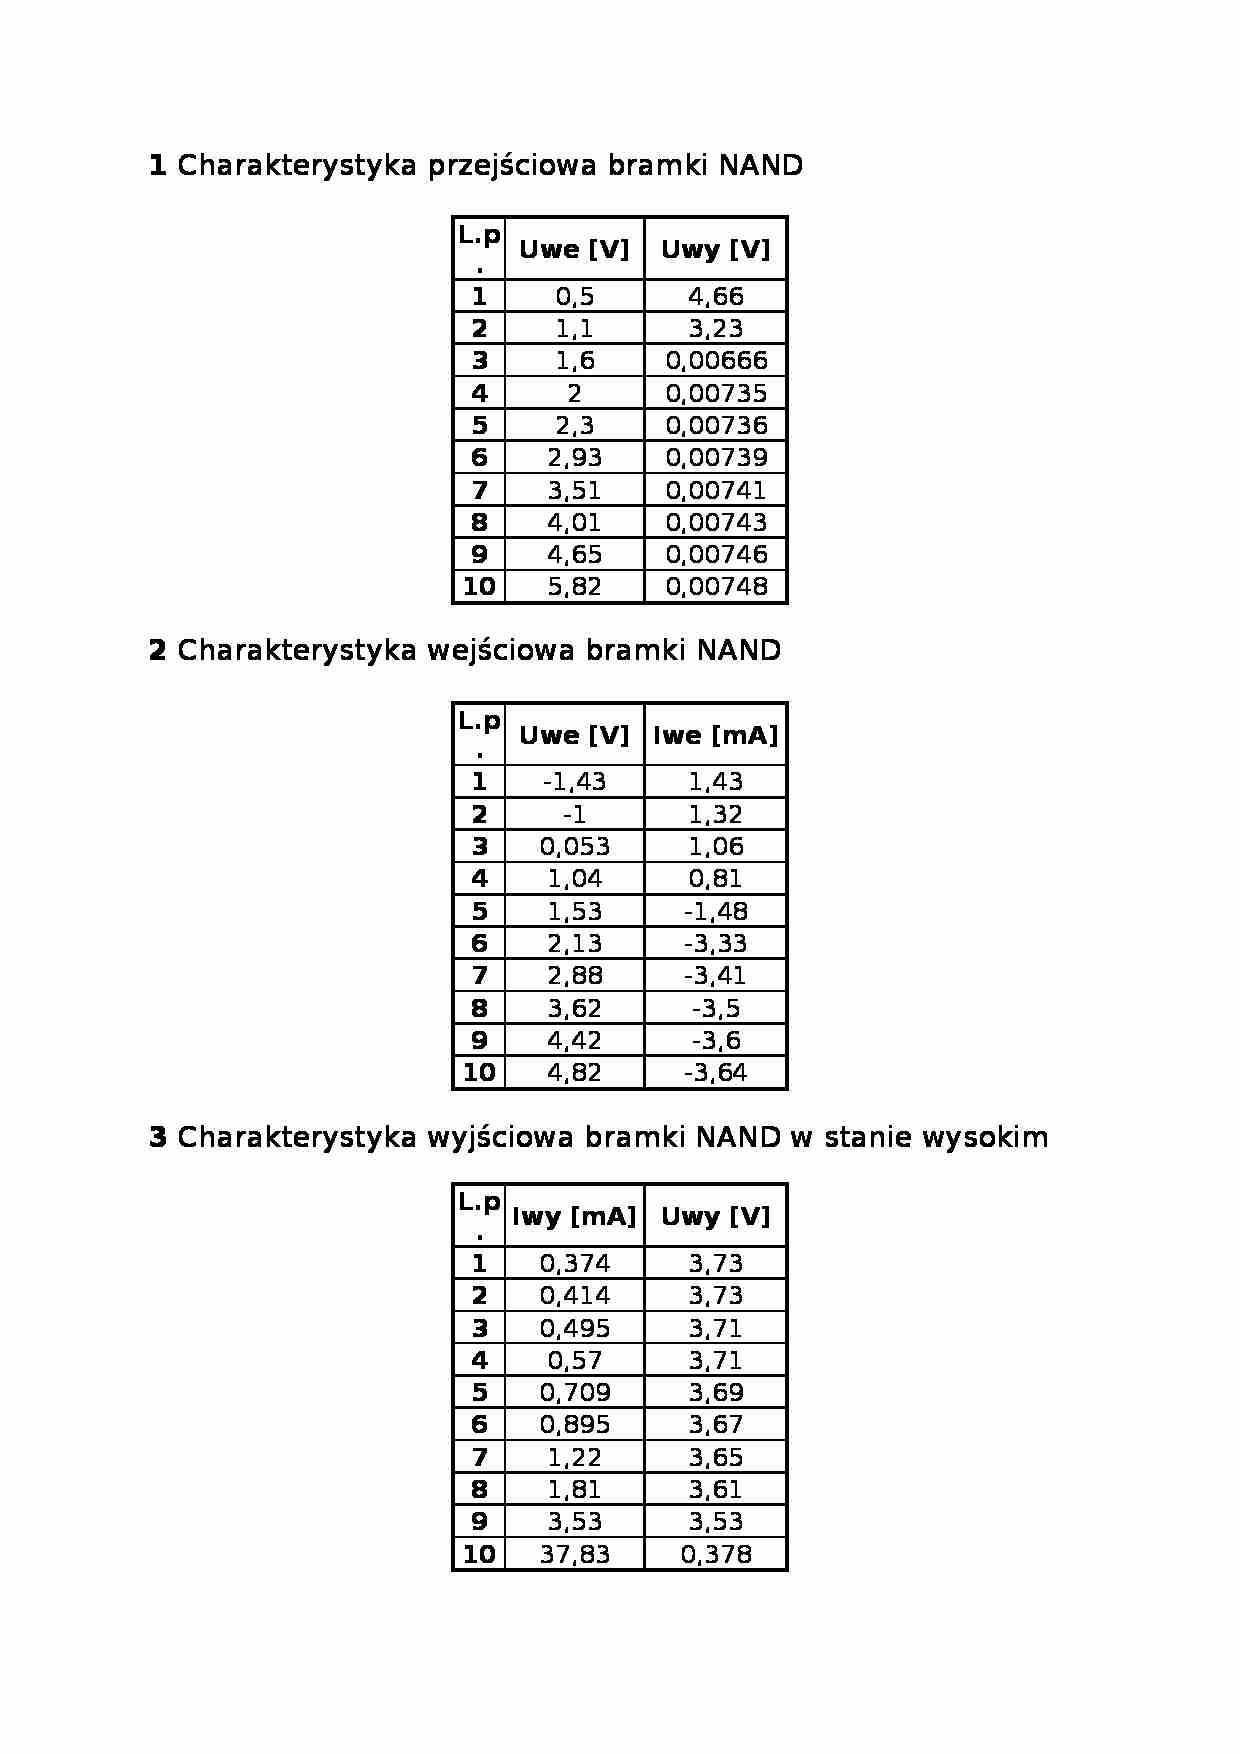 Charakterystyka przejściowa bramki NAND - Charakterystyka wejściowa bramki NAND - strona 1